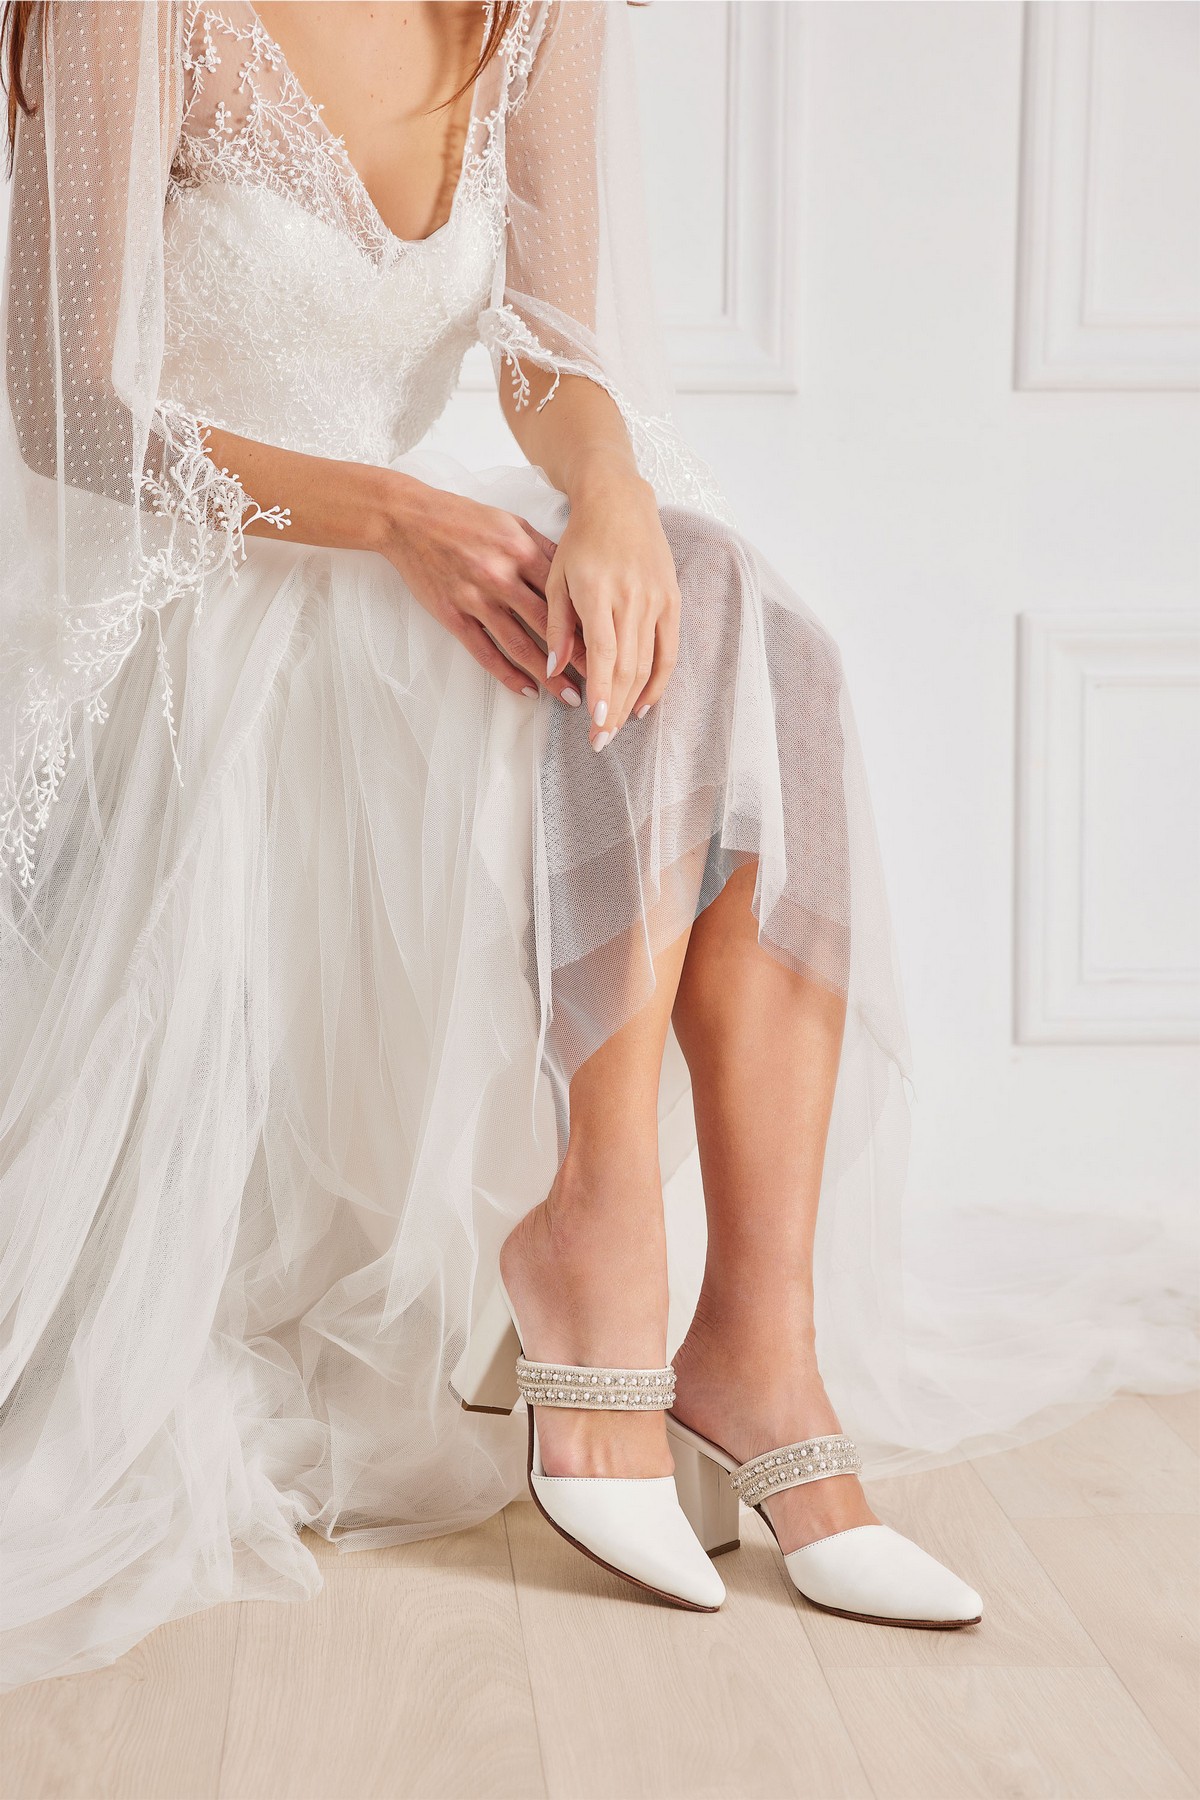 bridal shoes embellished